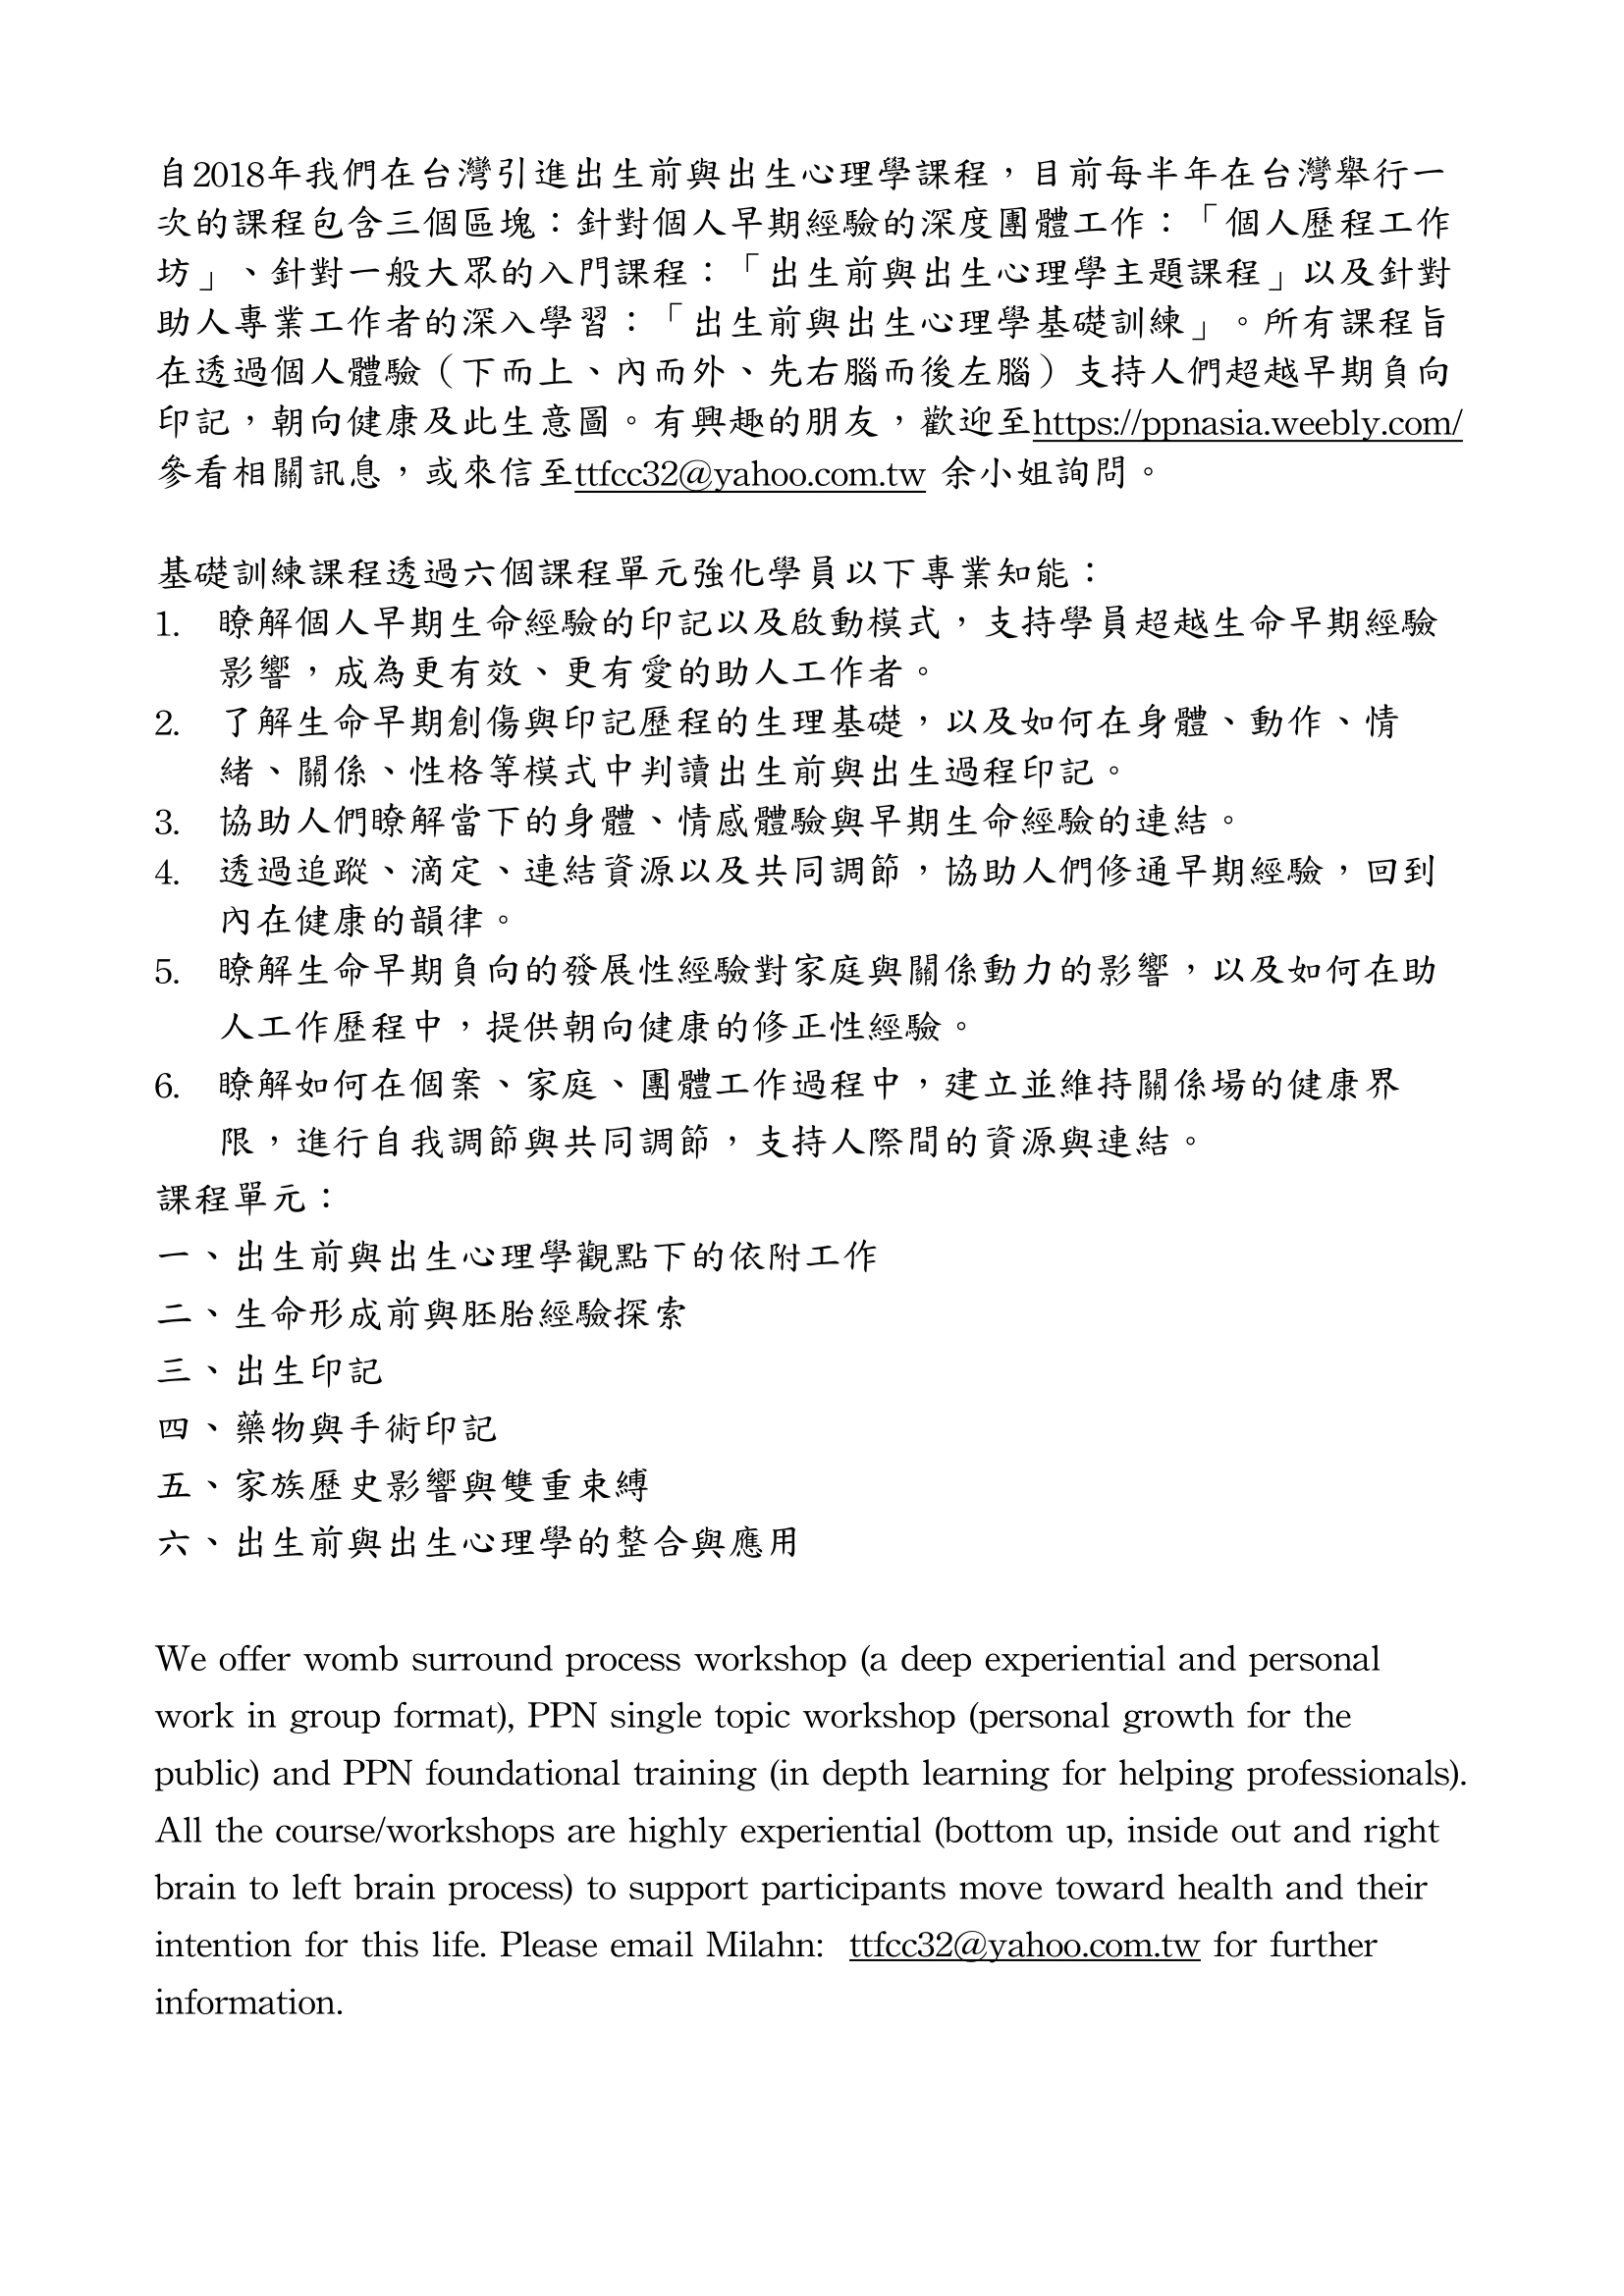 Taiwan PPN program-1.png